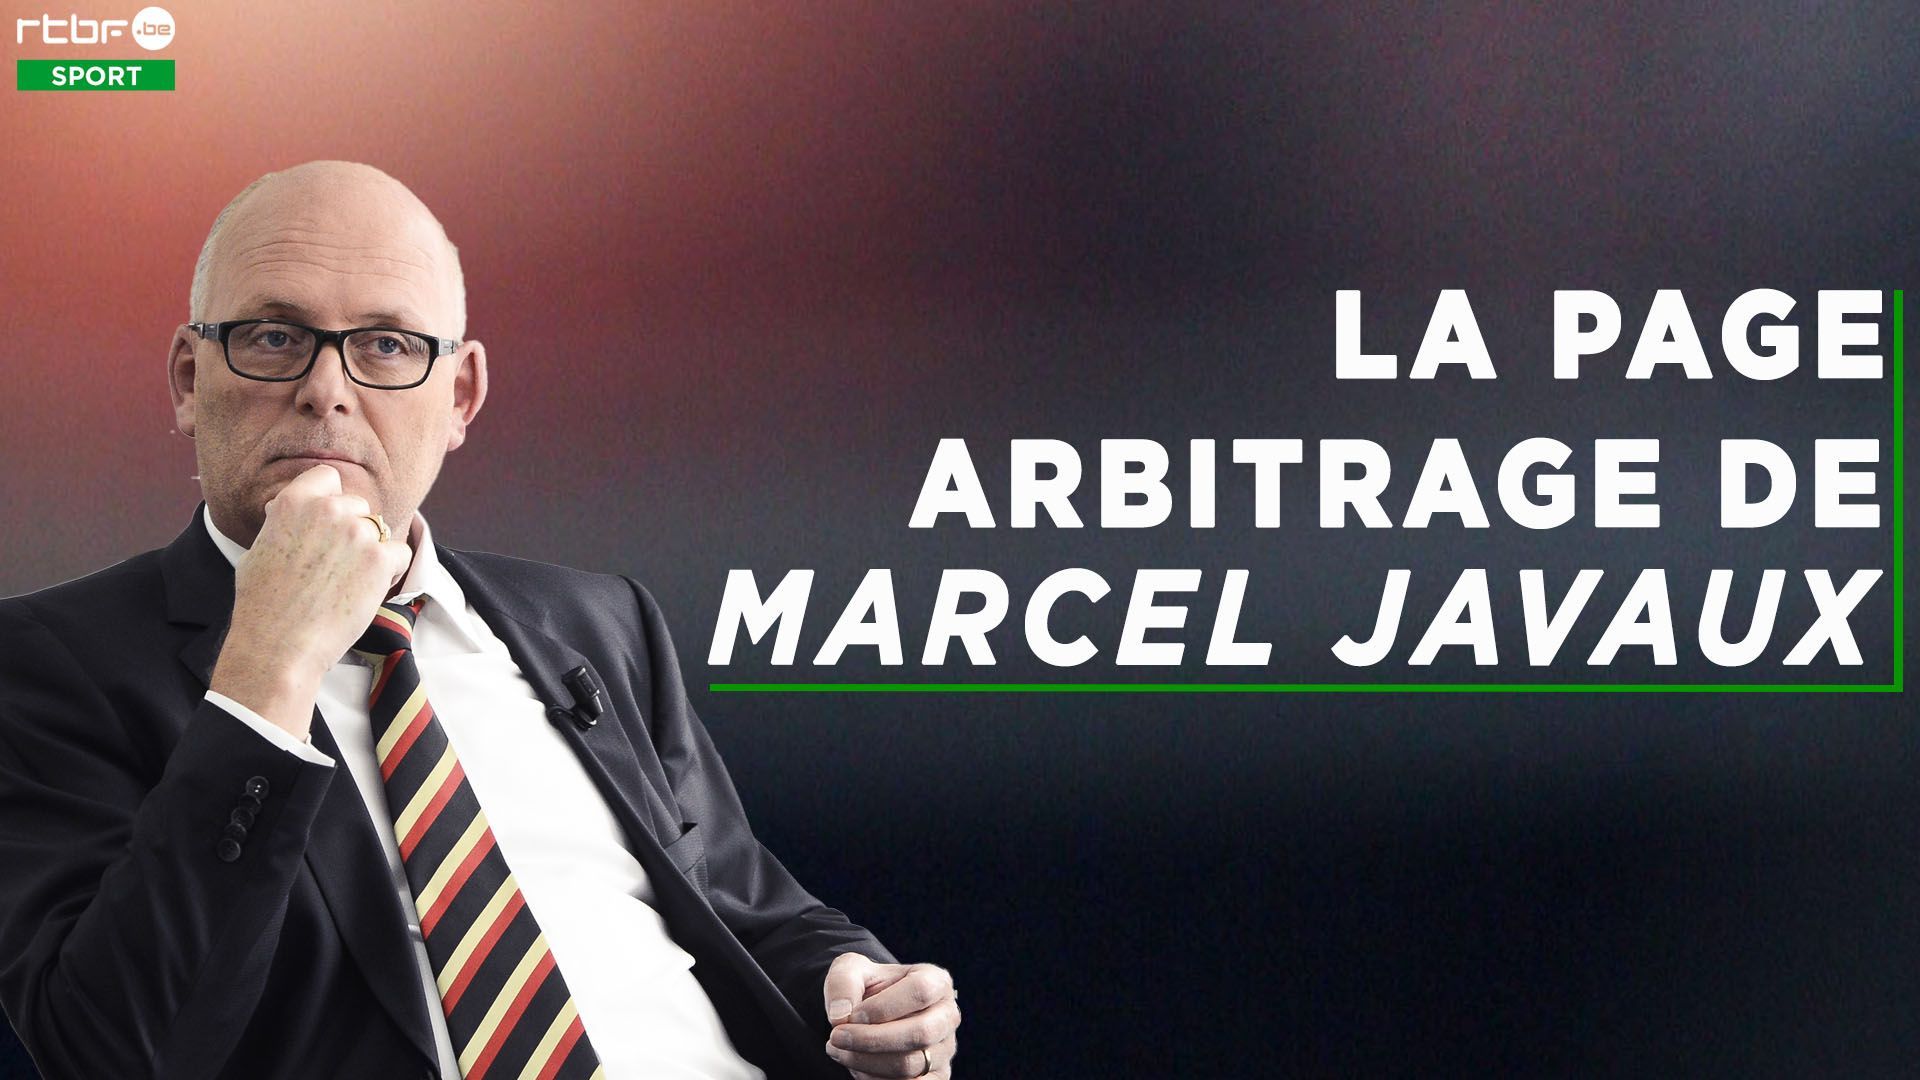 La page arbitrage de Marcel Javaux